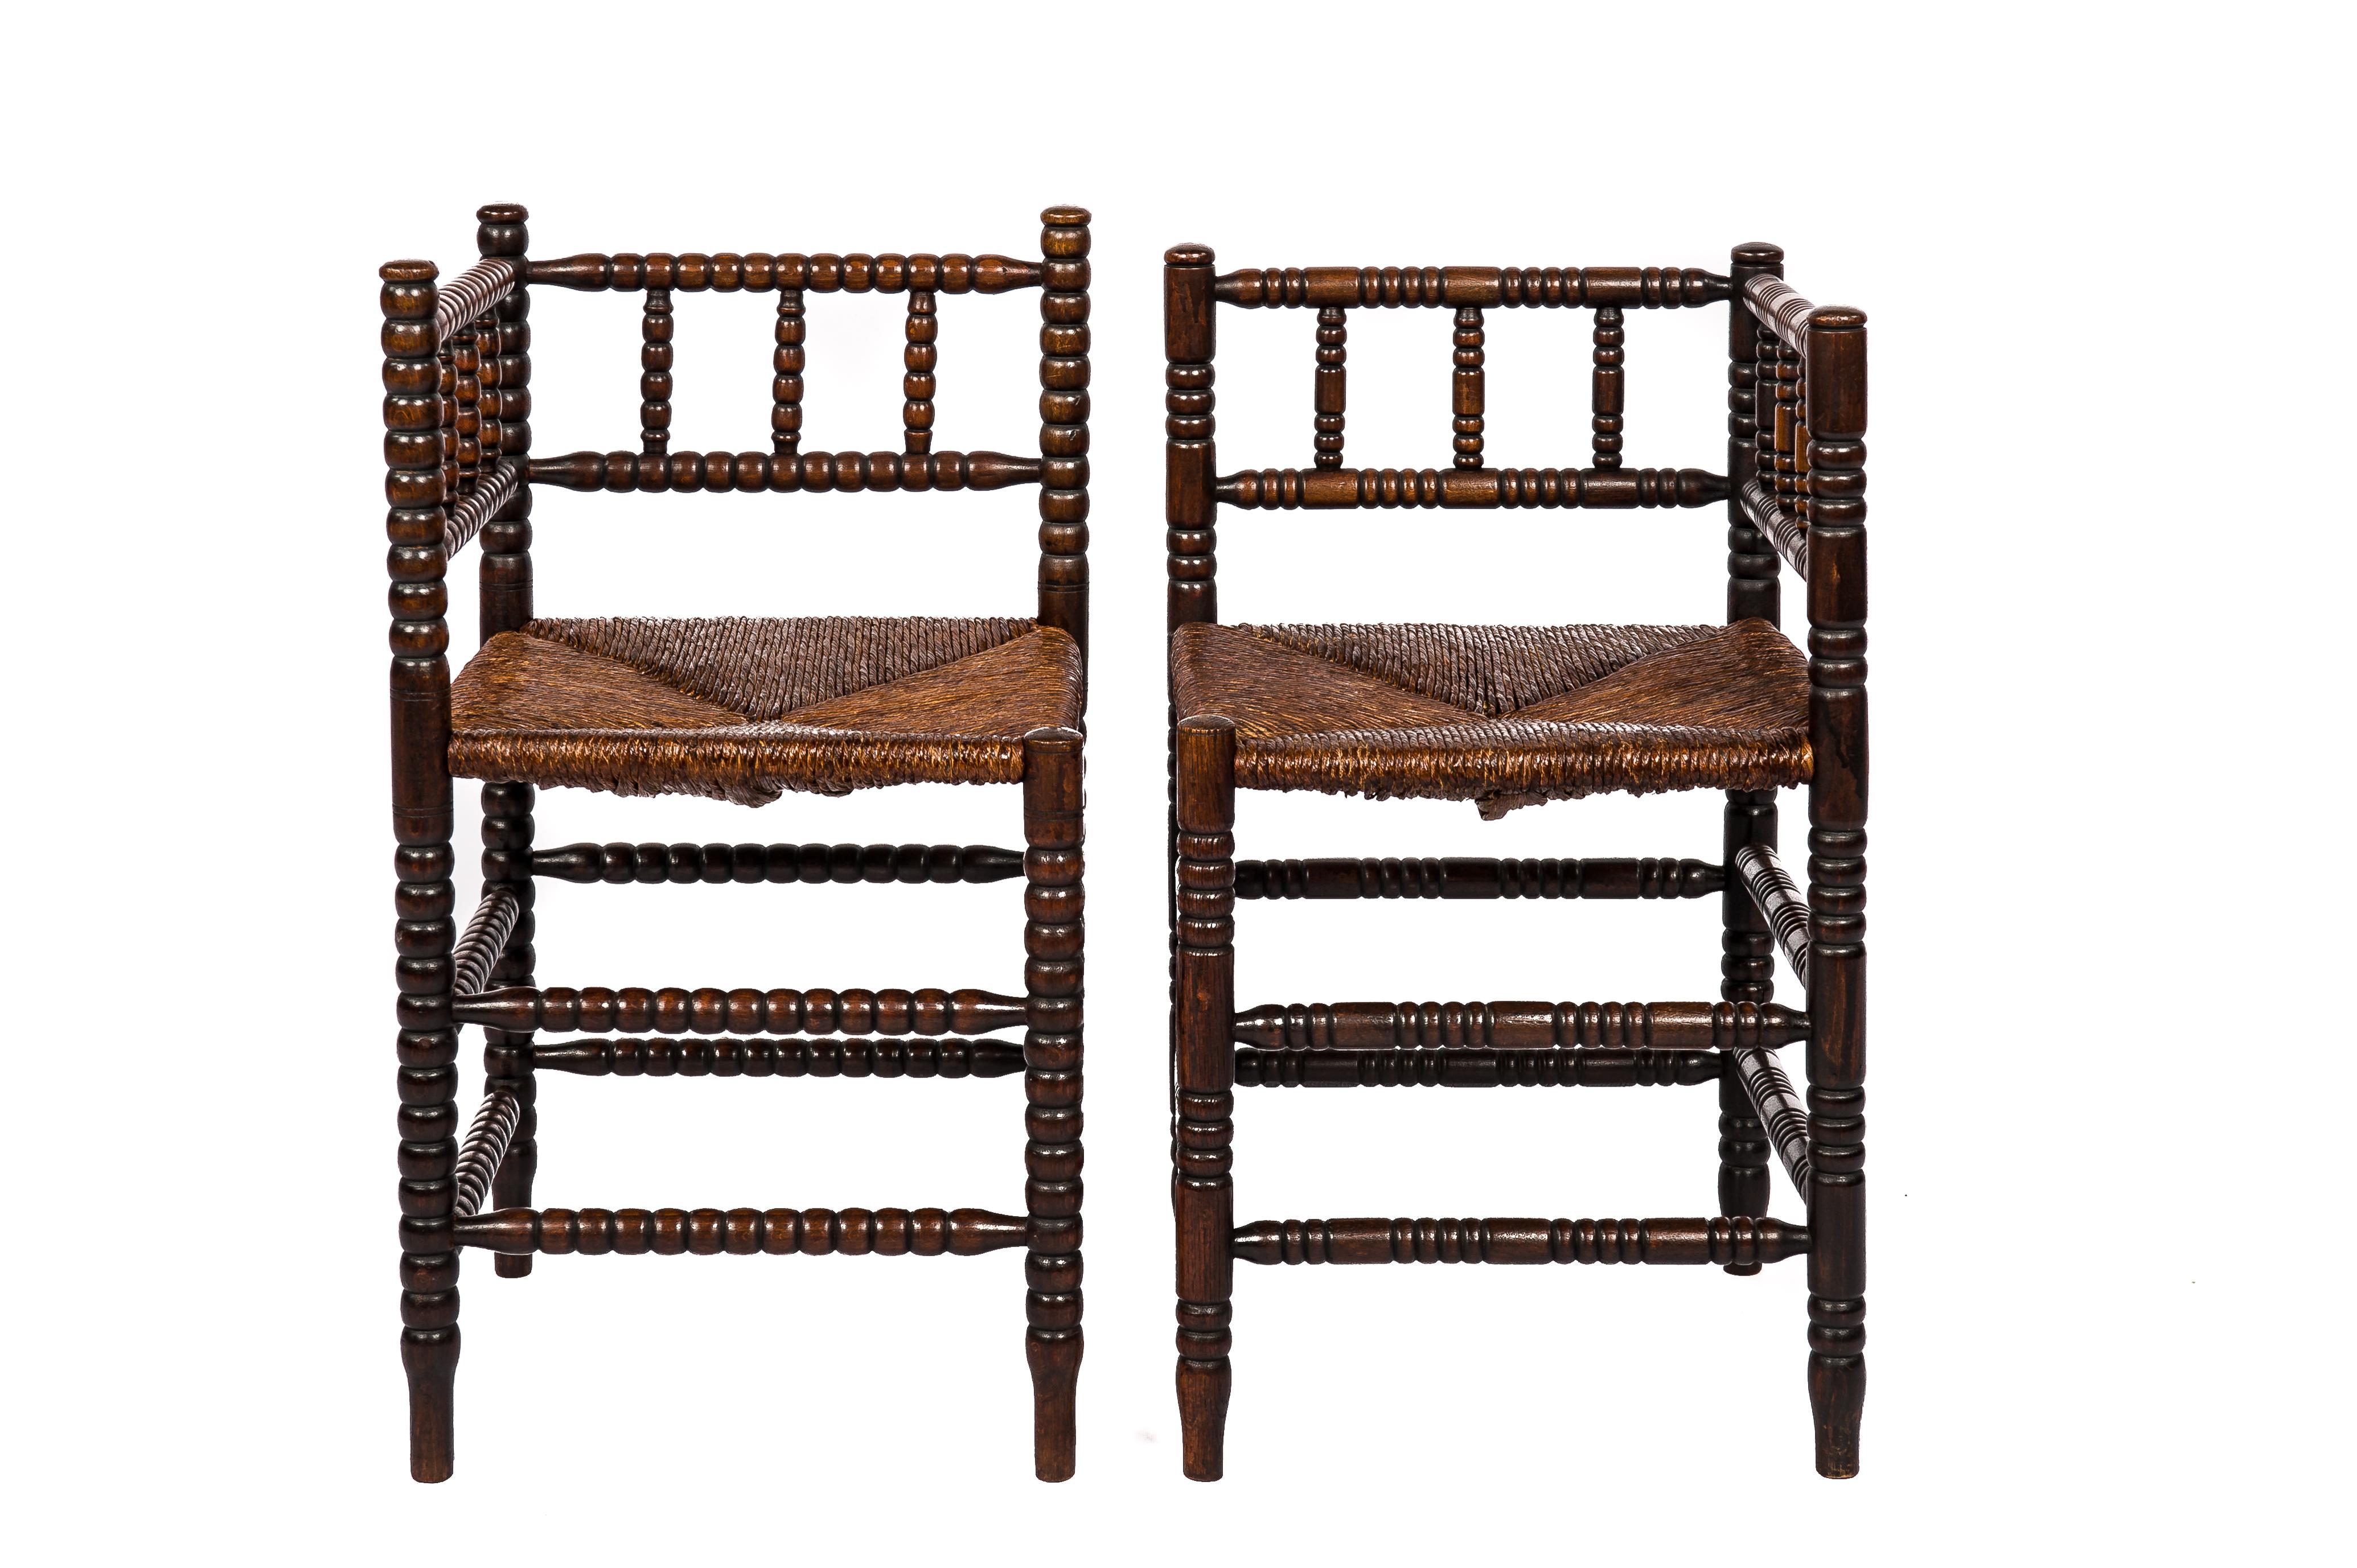 Découvrez un ensemble de chaises Bobbin anciennes qui reflète l'essence de la France du milieu du XIXe siècle. Ces chaises d'angle, chacune avec son caractère unique, offrent une touche d'élégance intemporelle. Dotées d'assises en jonc tressé à la